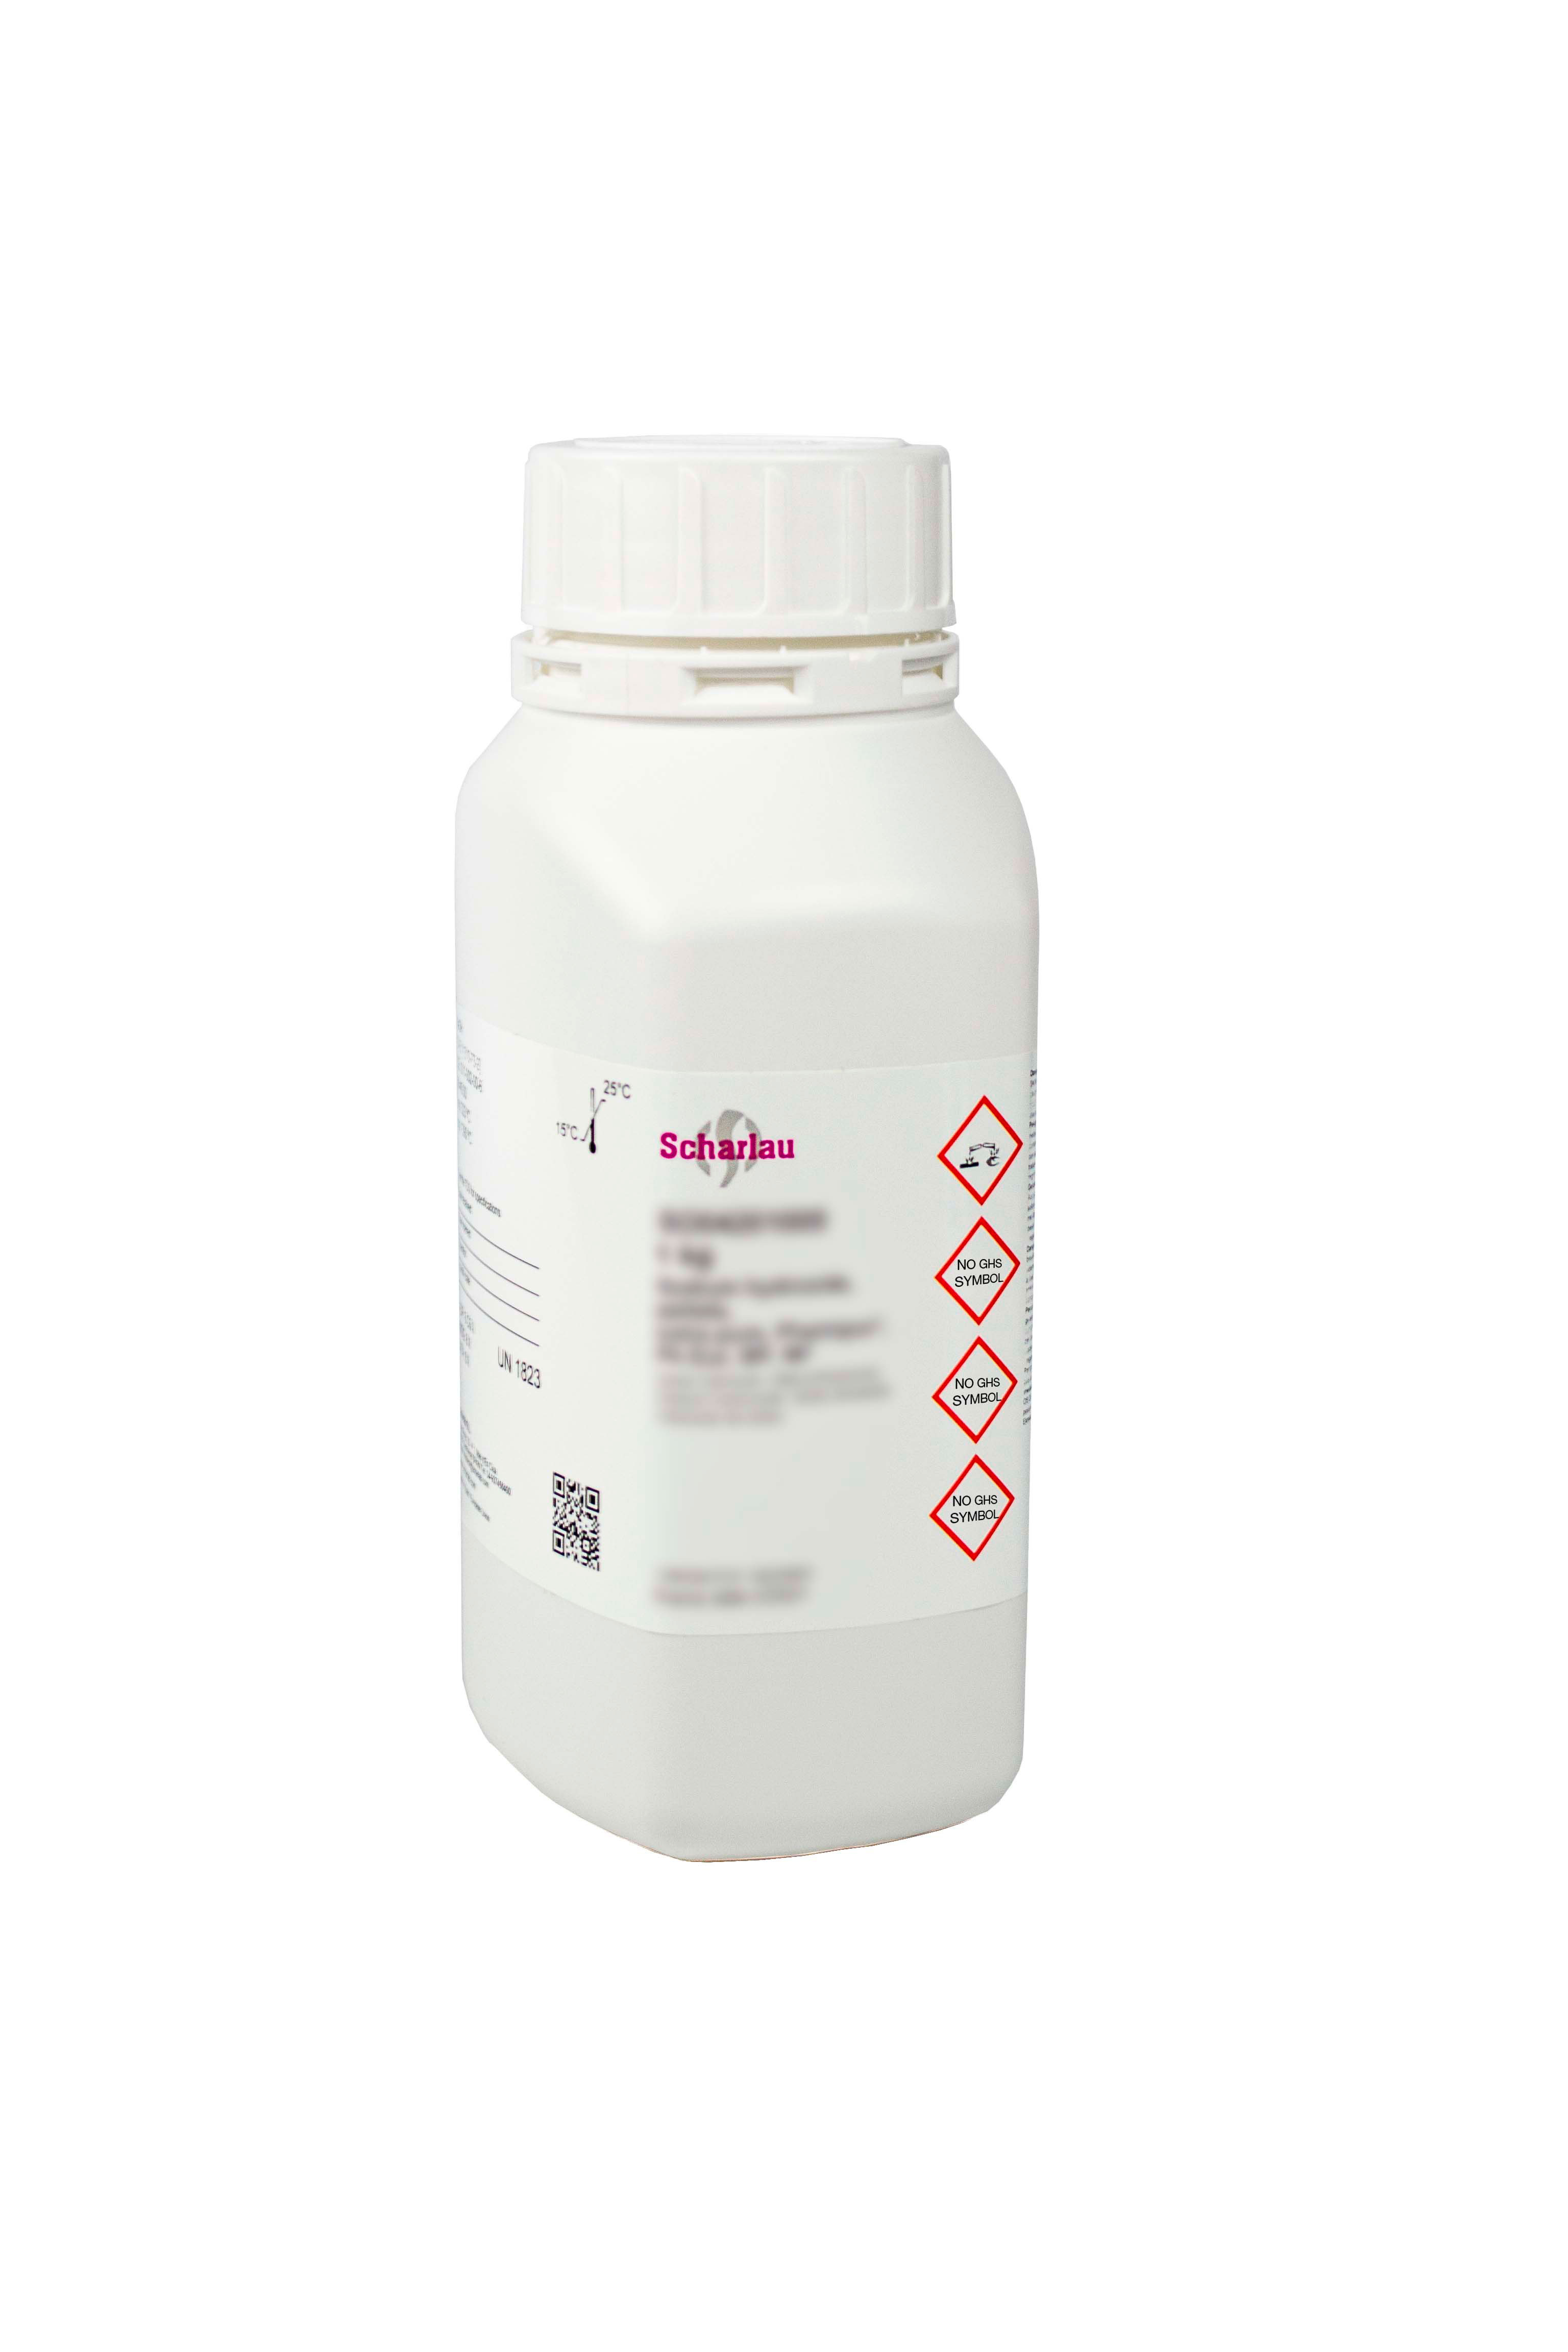 Hyamina® 1622 (Hyamina es una marca registrada de la compañía Rohm and Haas), Bencetonio cloruro